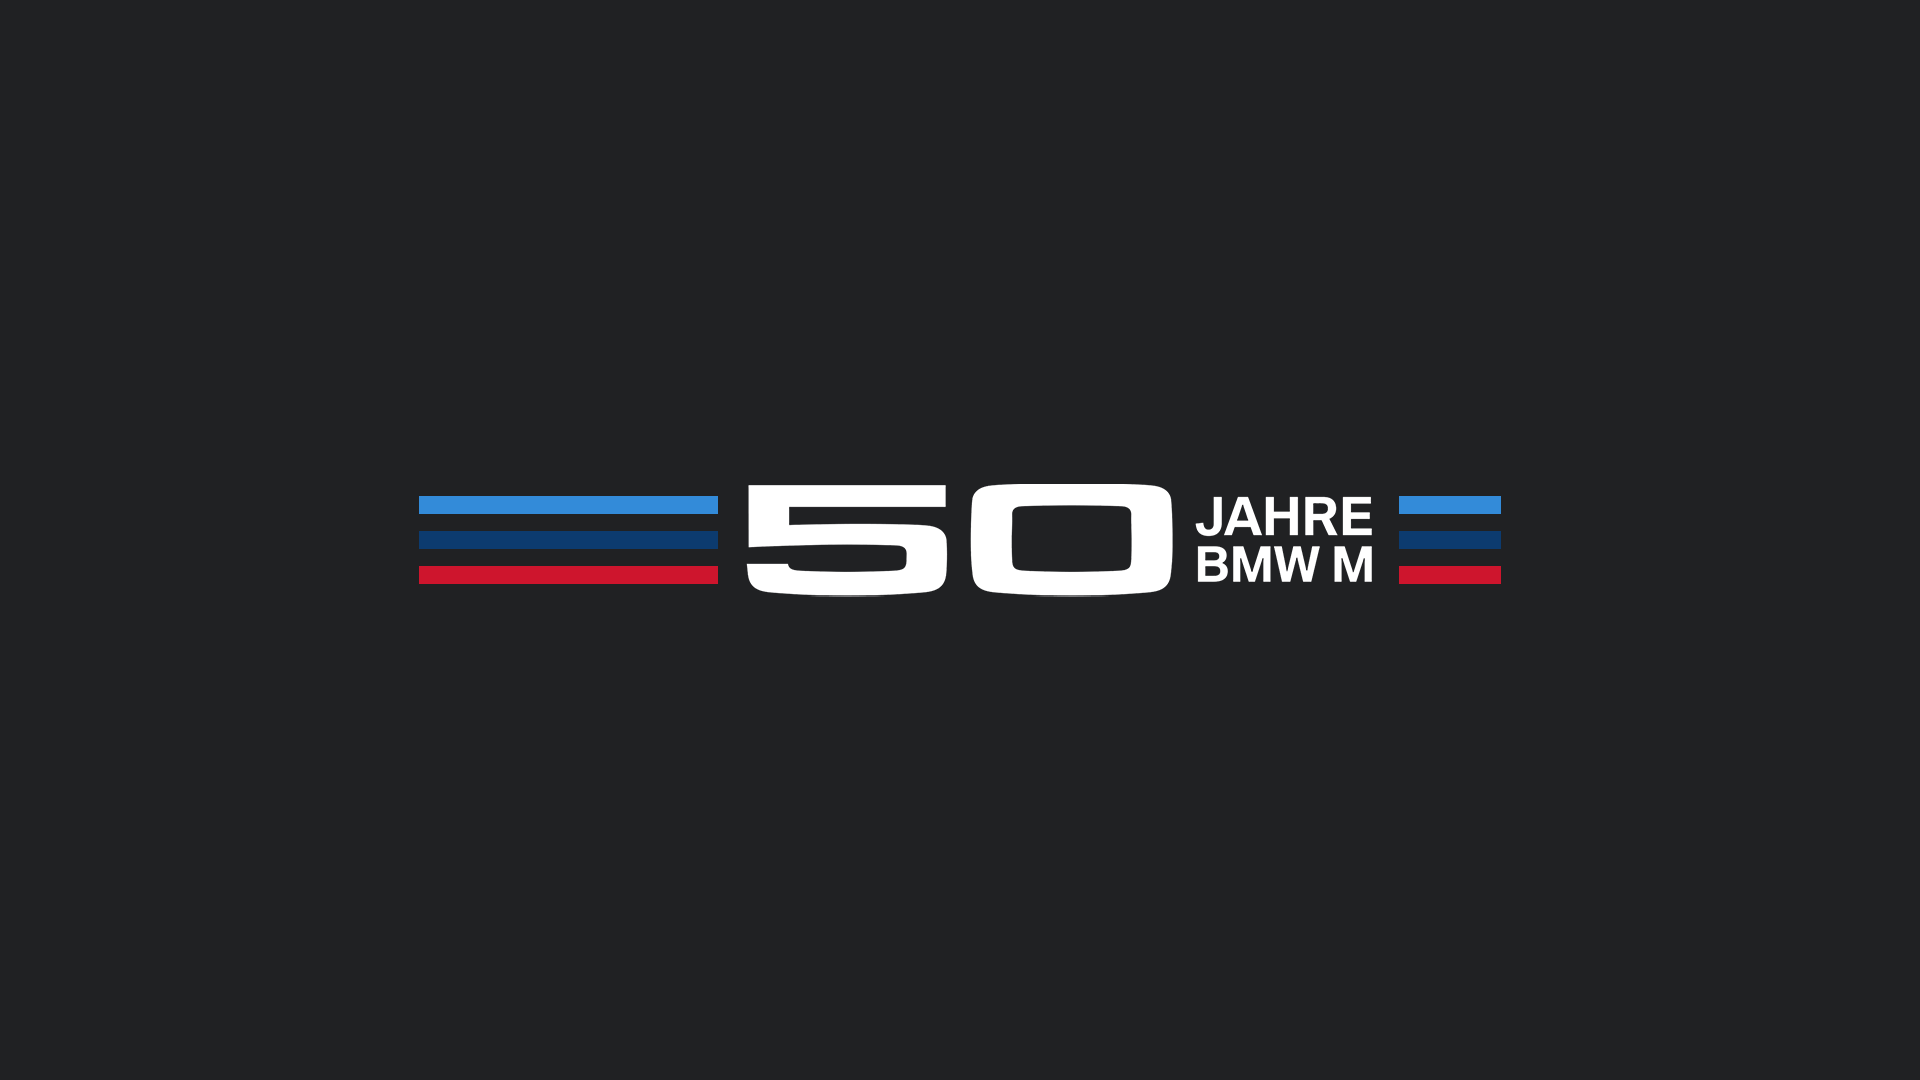 「50 JAHRE BMW M（宝马M 50周年）」商标